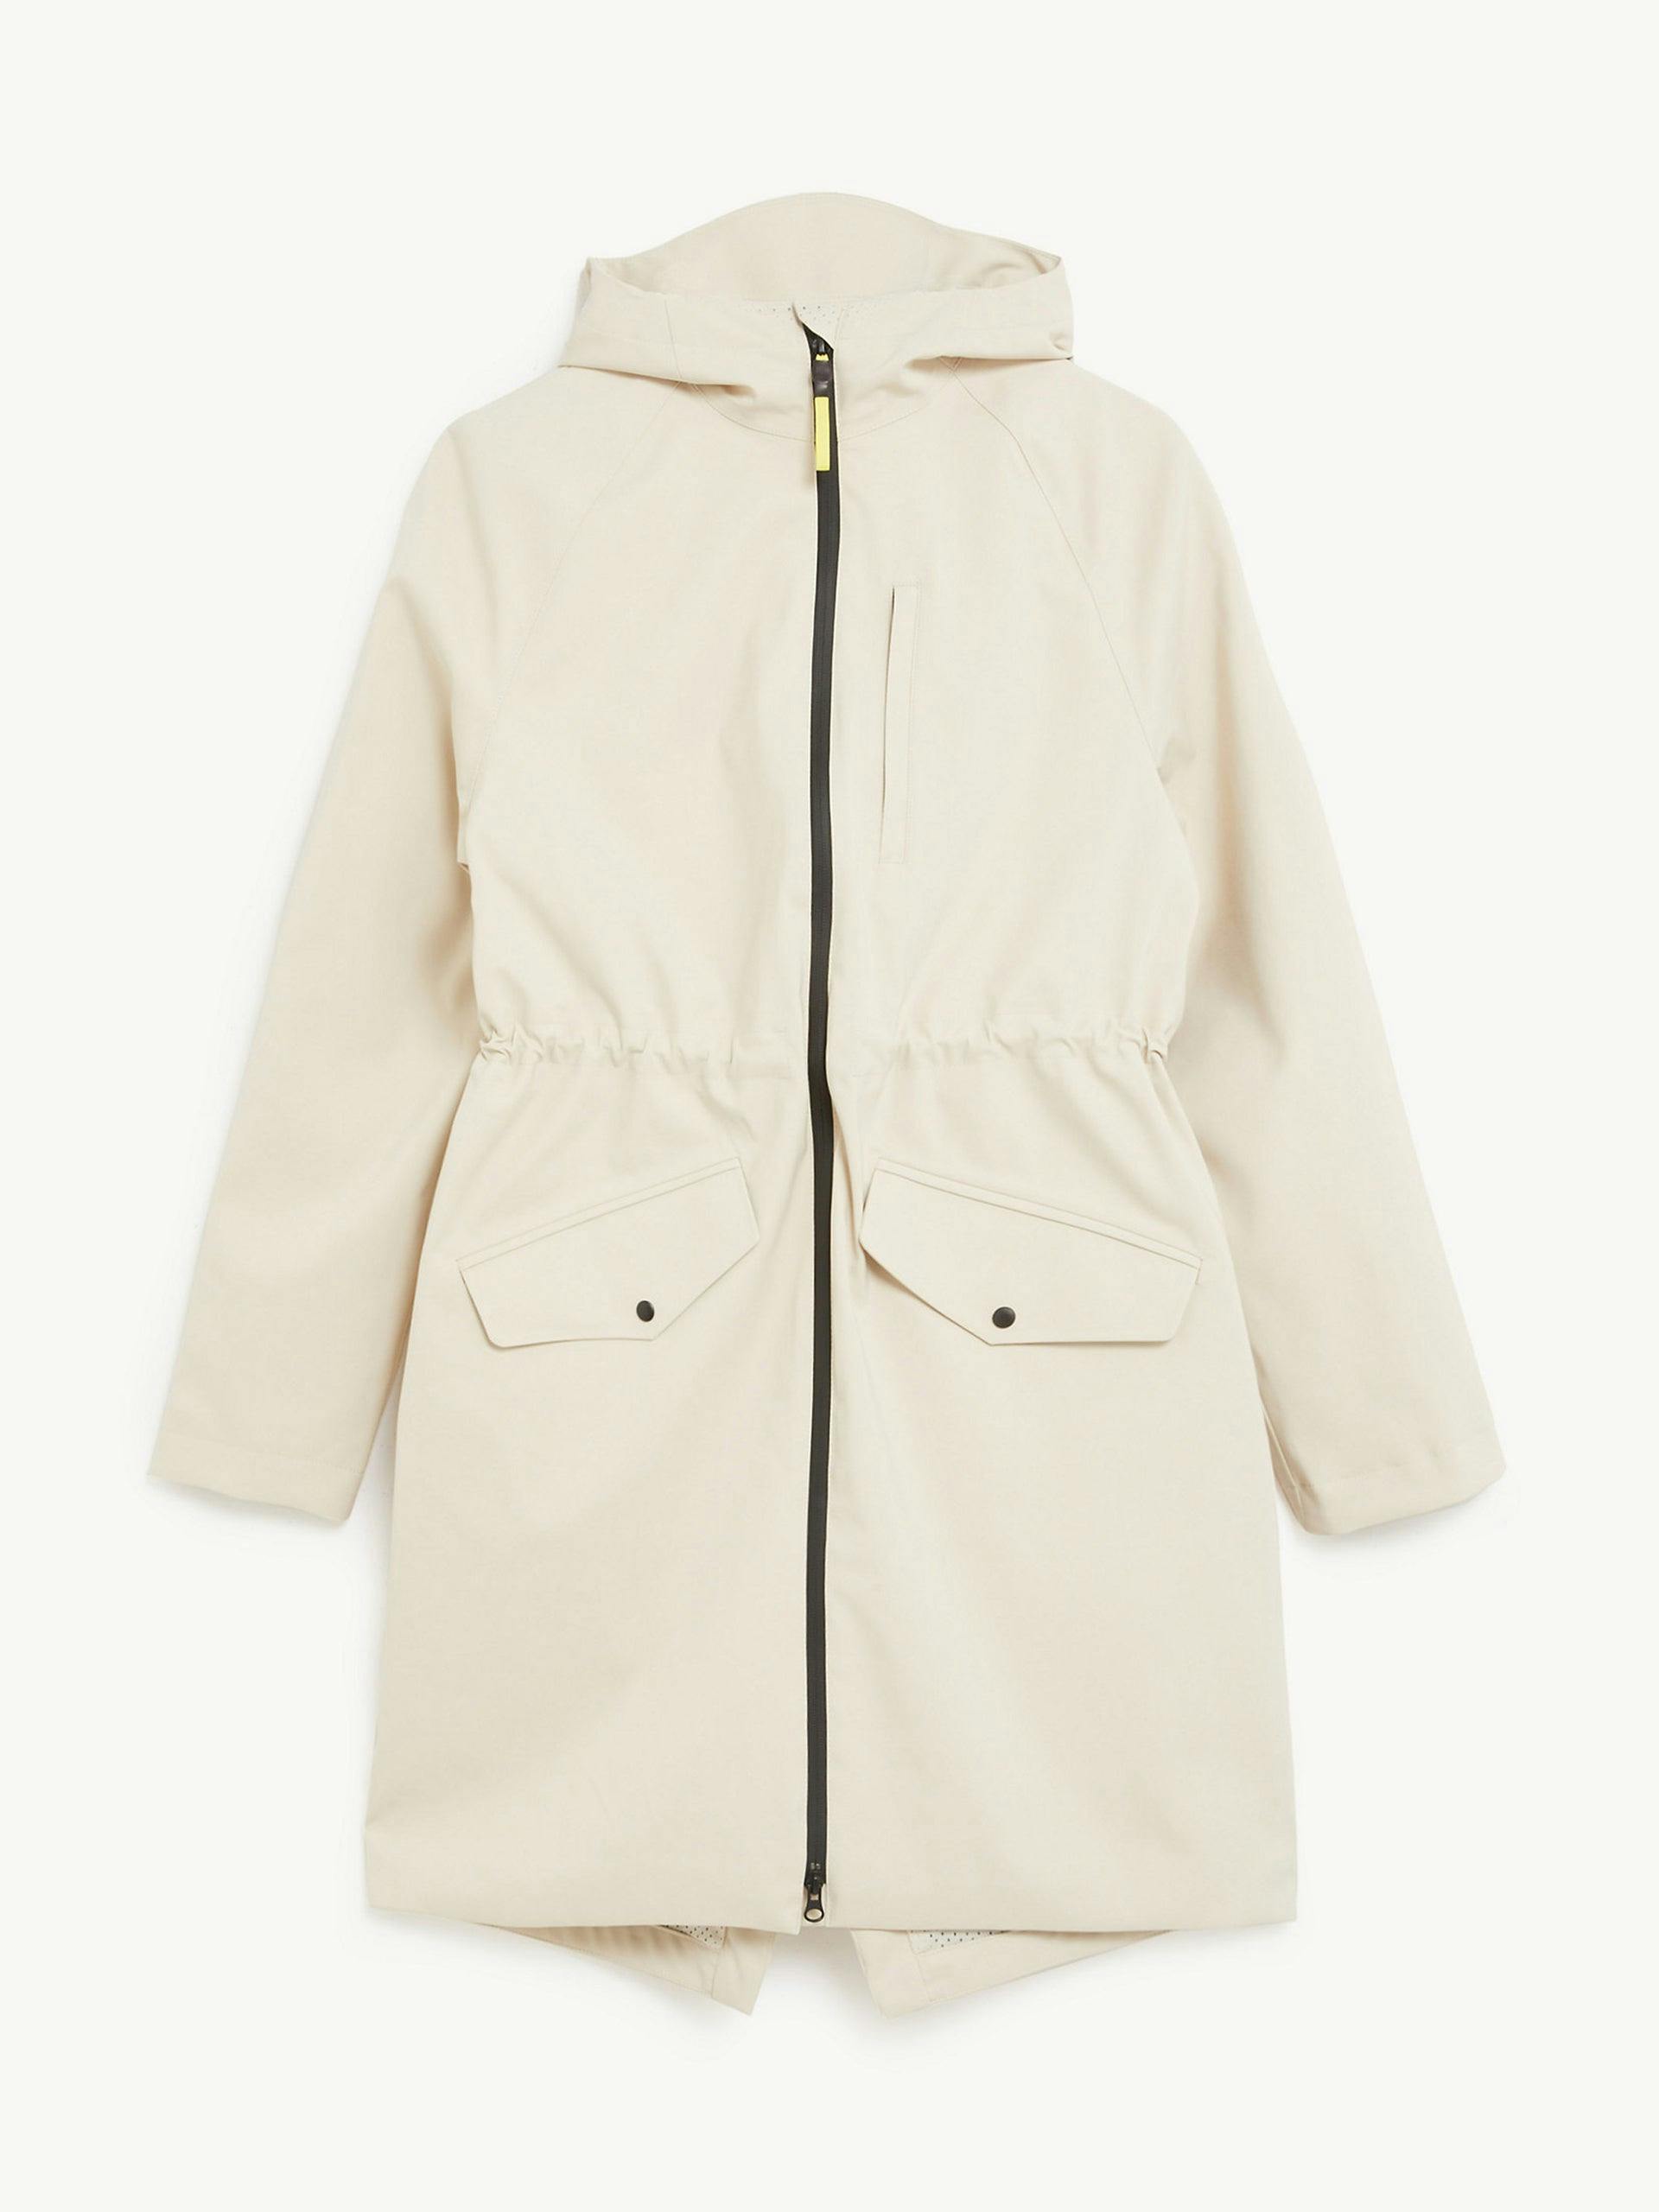 Waterproof hooded longline parka coat